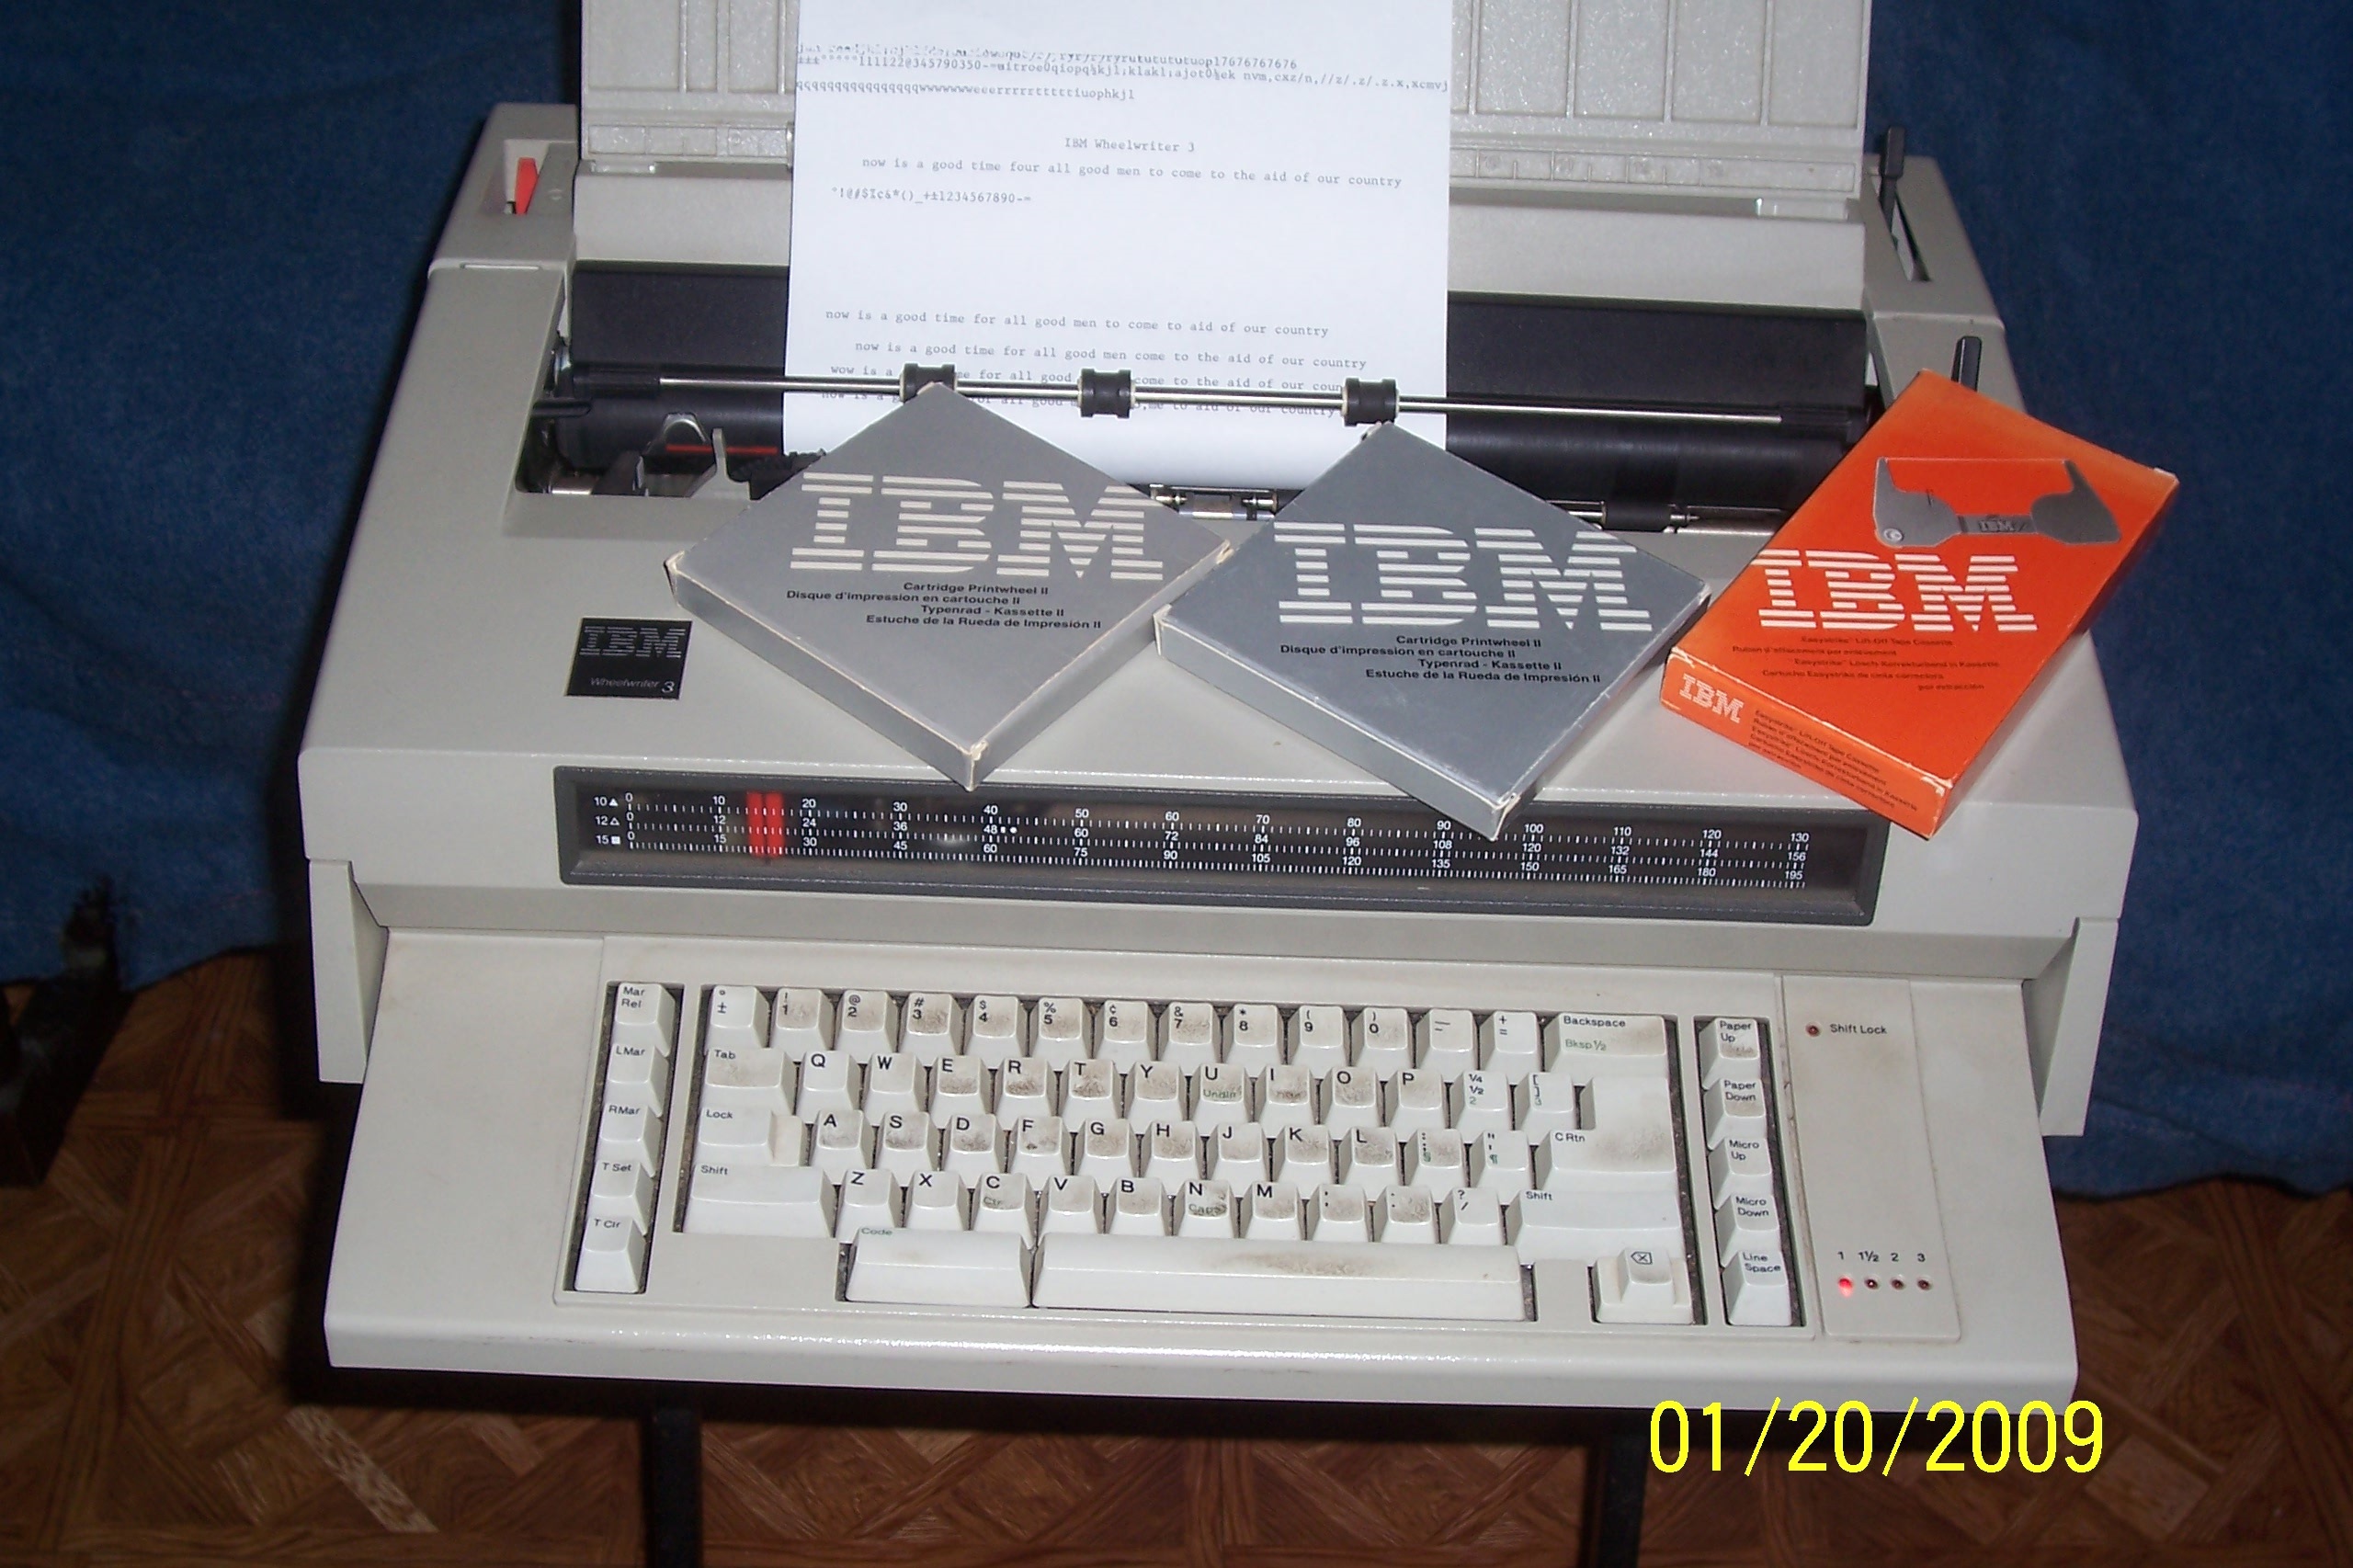 IBM Selectric III Typewriter